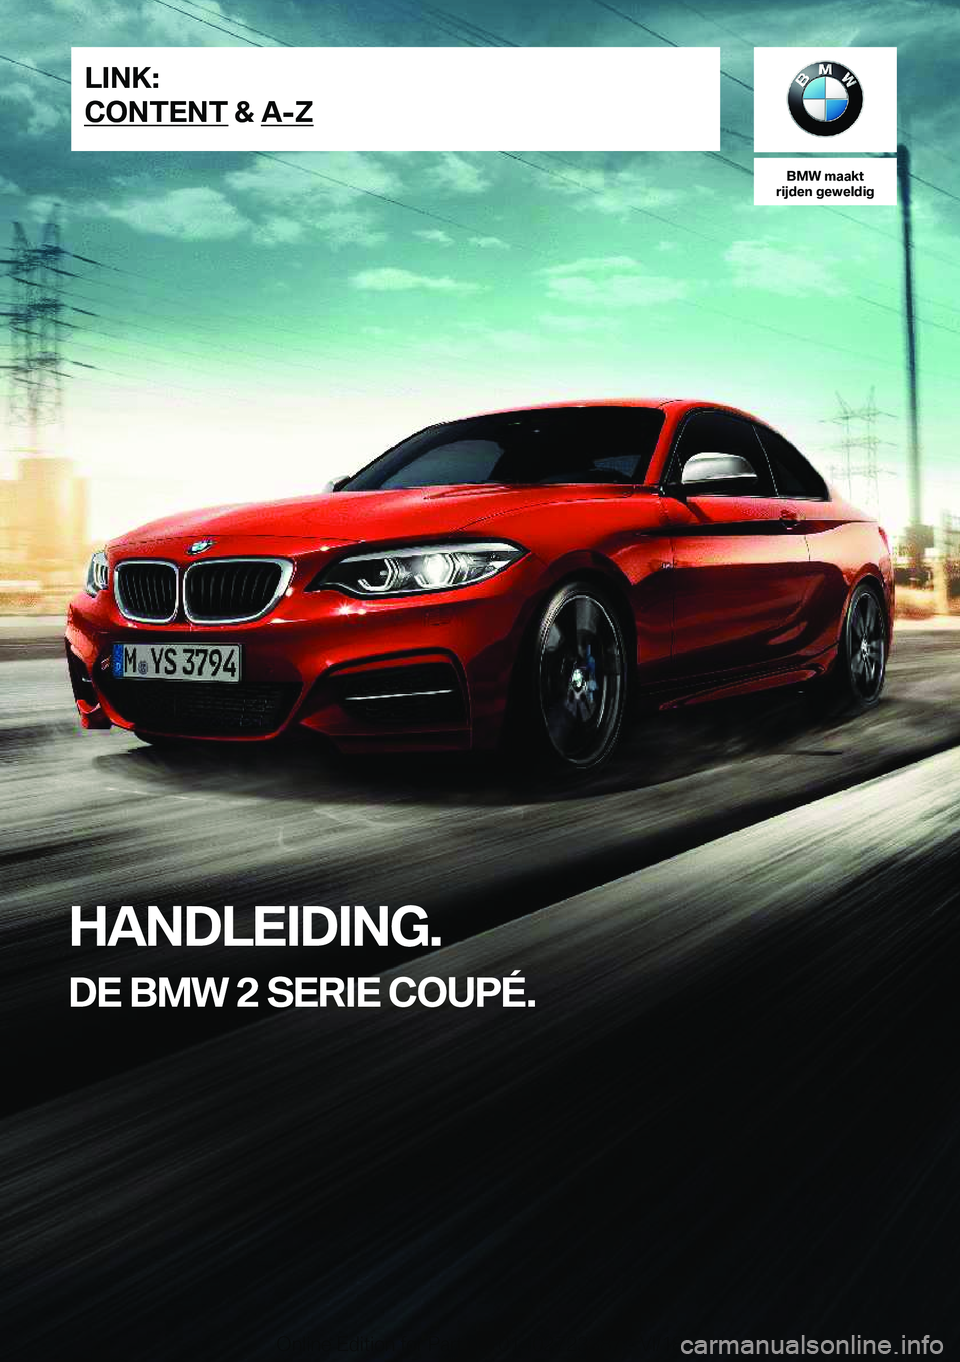 BMW 2 SERIES COUPE 2019  Instructieboekjes (in Dutch) �B�M�W��m�a�a�k�t
�r�i�j�d�e�n��g�e�w�e�l�d�i�g
�H�A�N�D�L�E�I�D�I�N�G�.
�D�E��B�M�W��2��S�E�R�I�E��C�O�U�P�